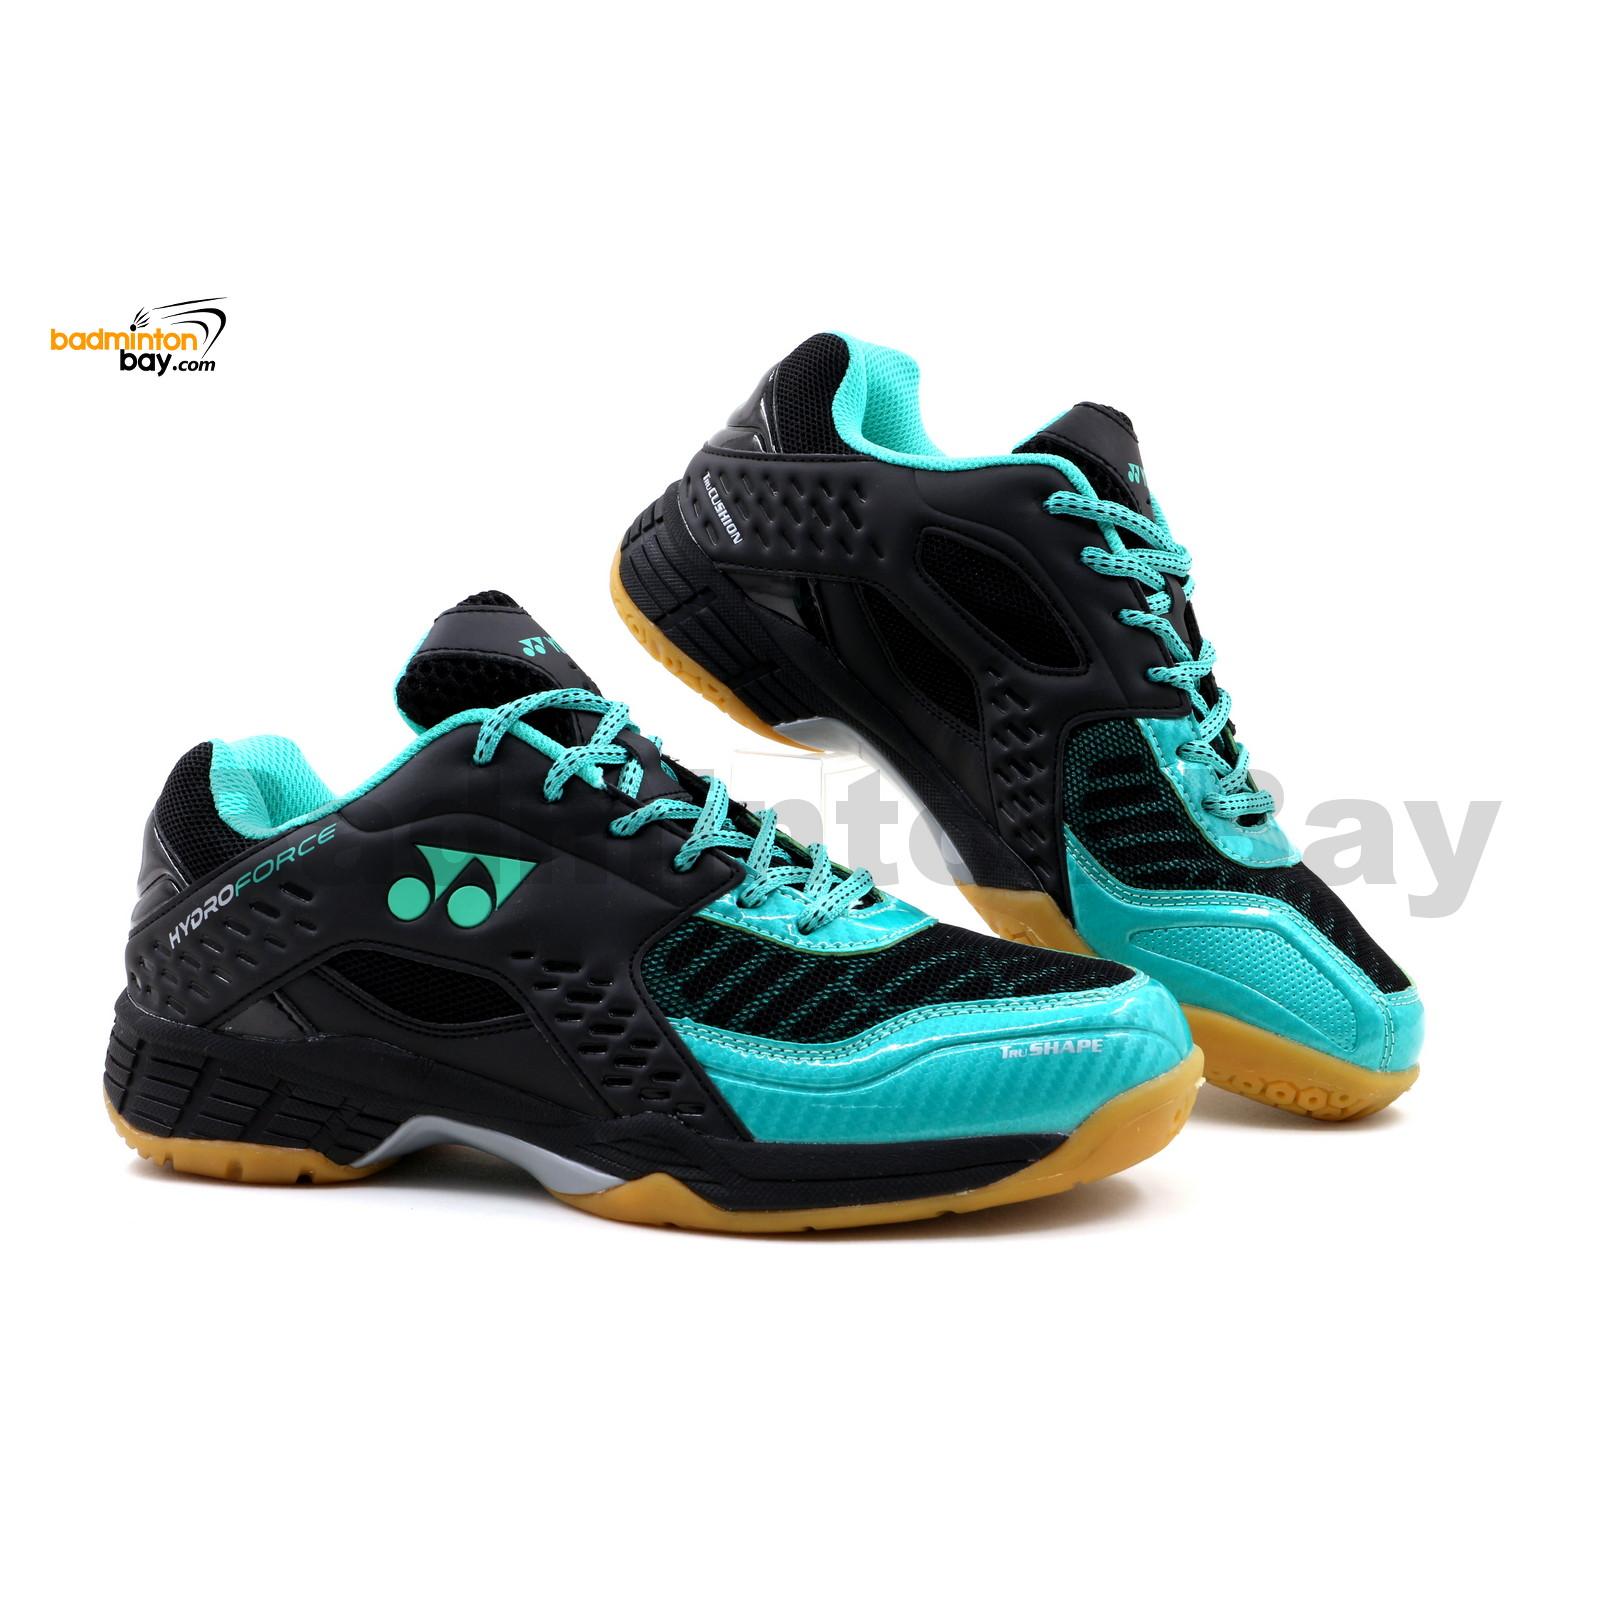 yonex hydro force 2 badminton shoes review